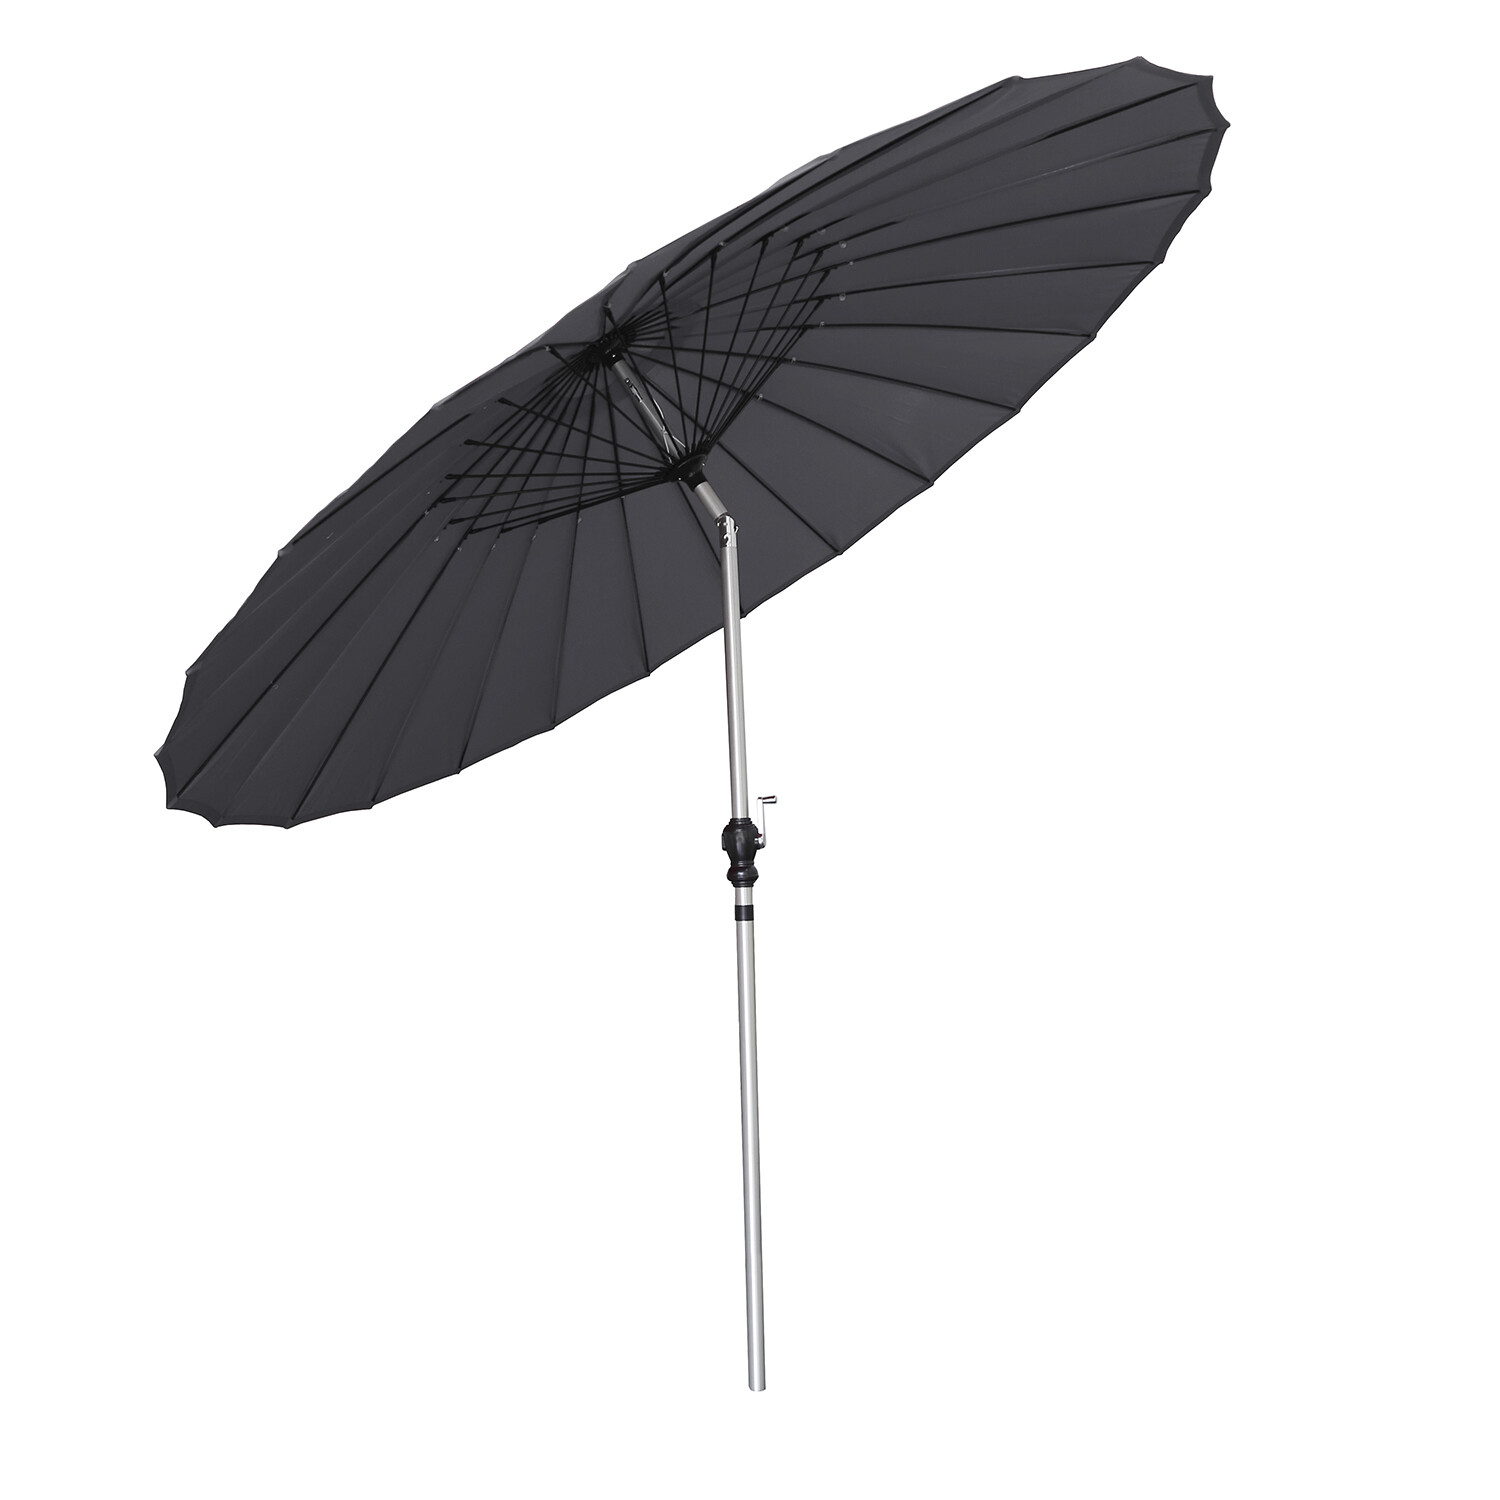 Black Shanghai Umbrella Parasol 2.45m Image 2